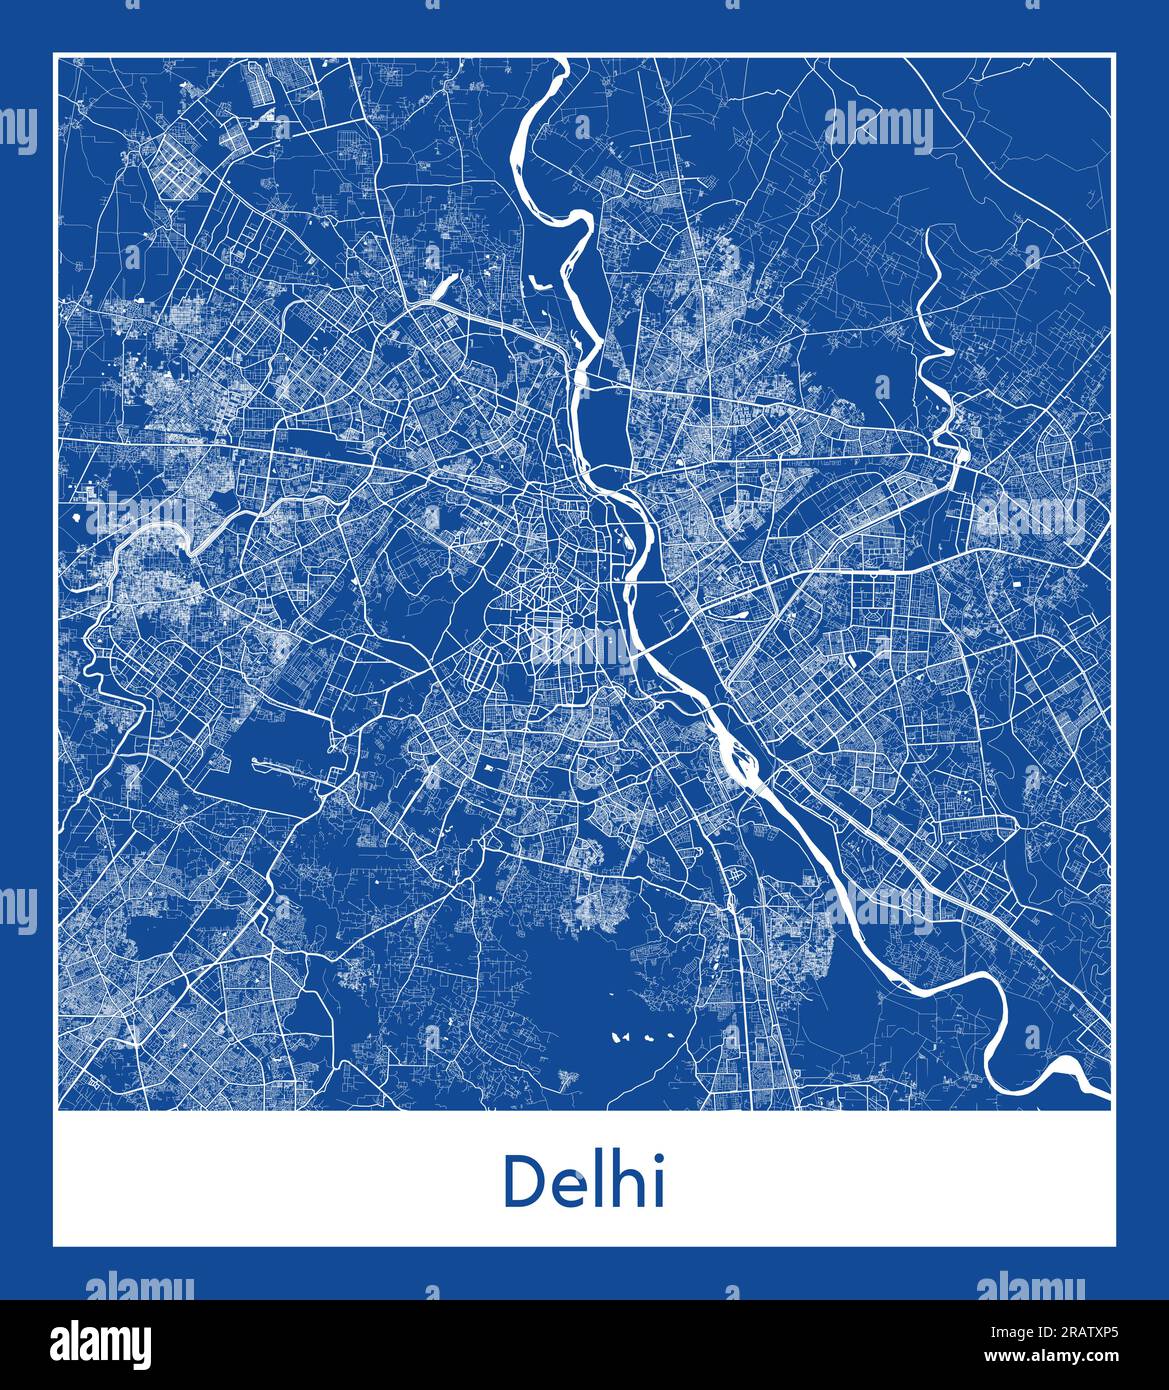 Delhi India Asia City mapa ilustración vectorial de impresión azul Ilustración del Vector